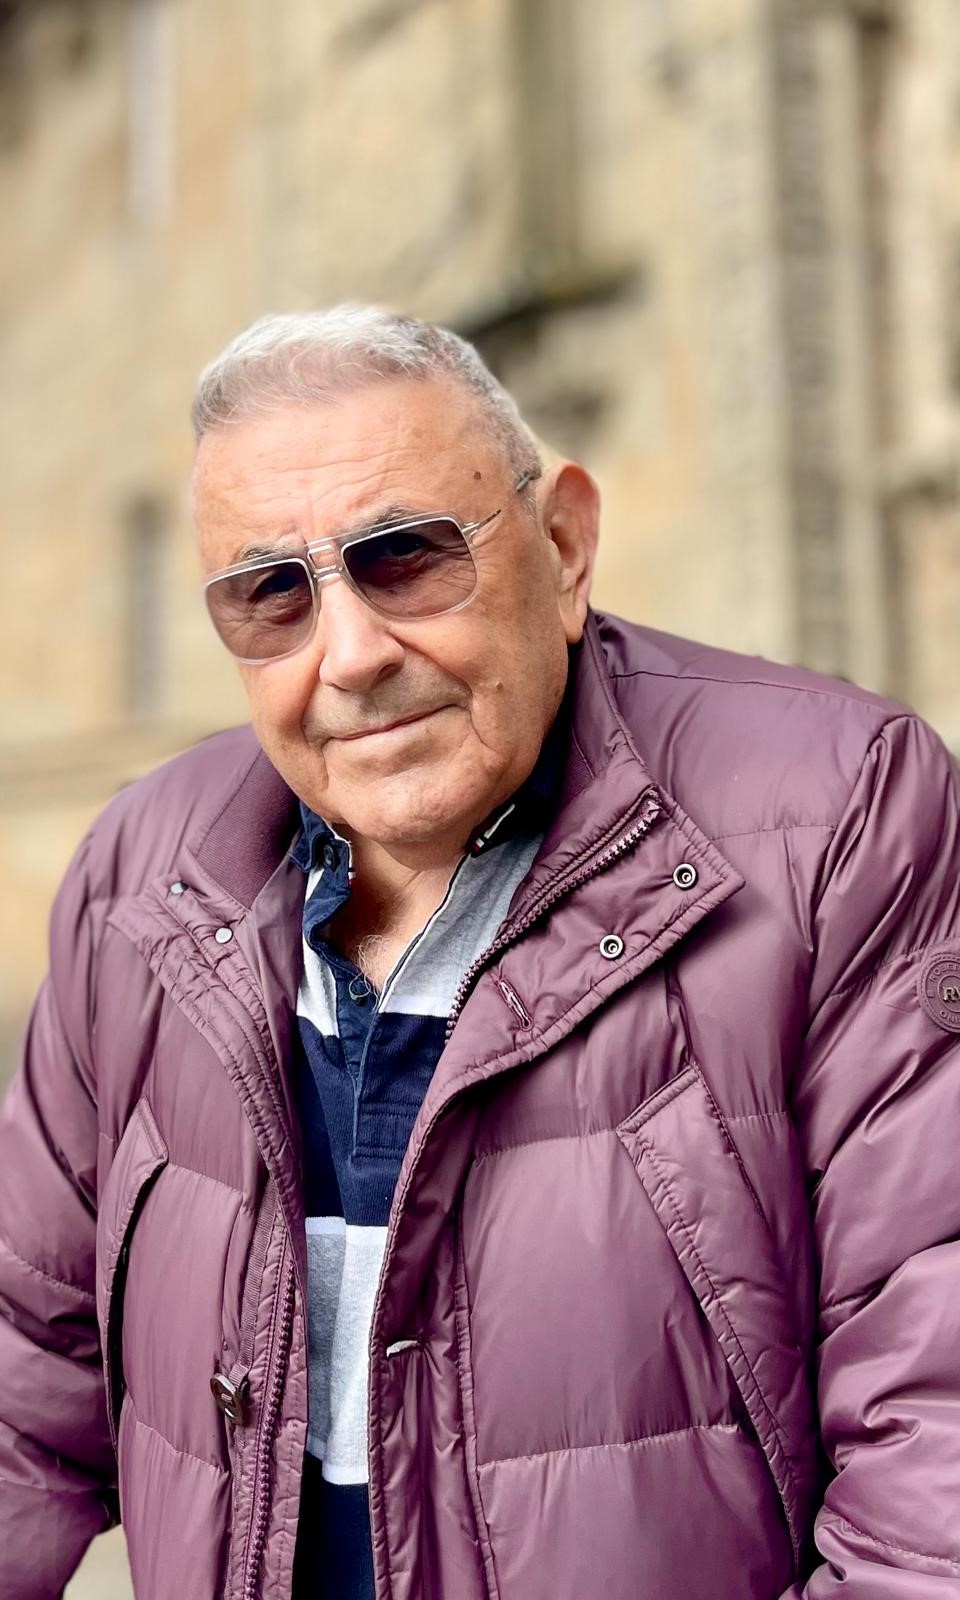 Fallece el Fundador de Unibox y Vifico, Tomás Cardeñas Blasco, a los 85 años